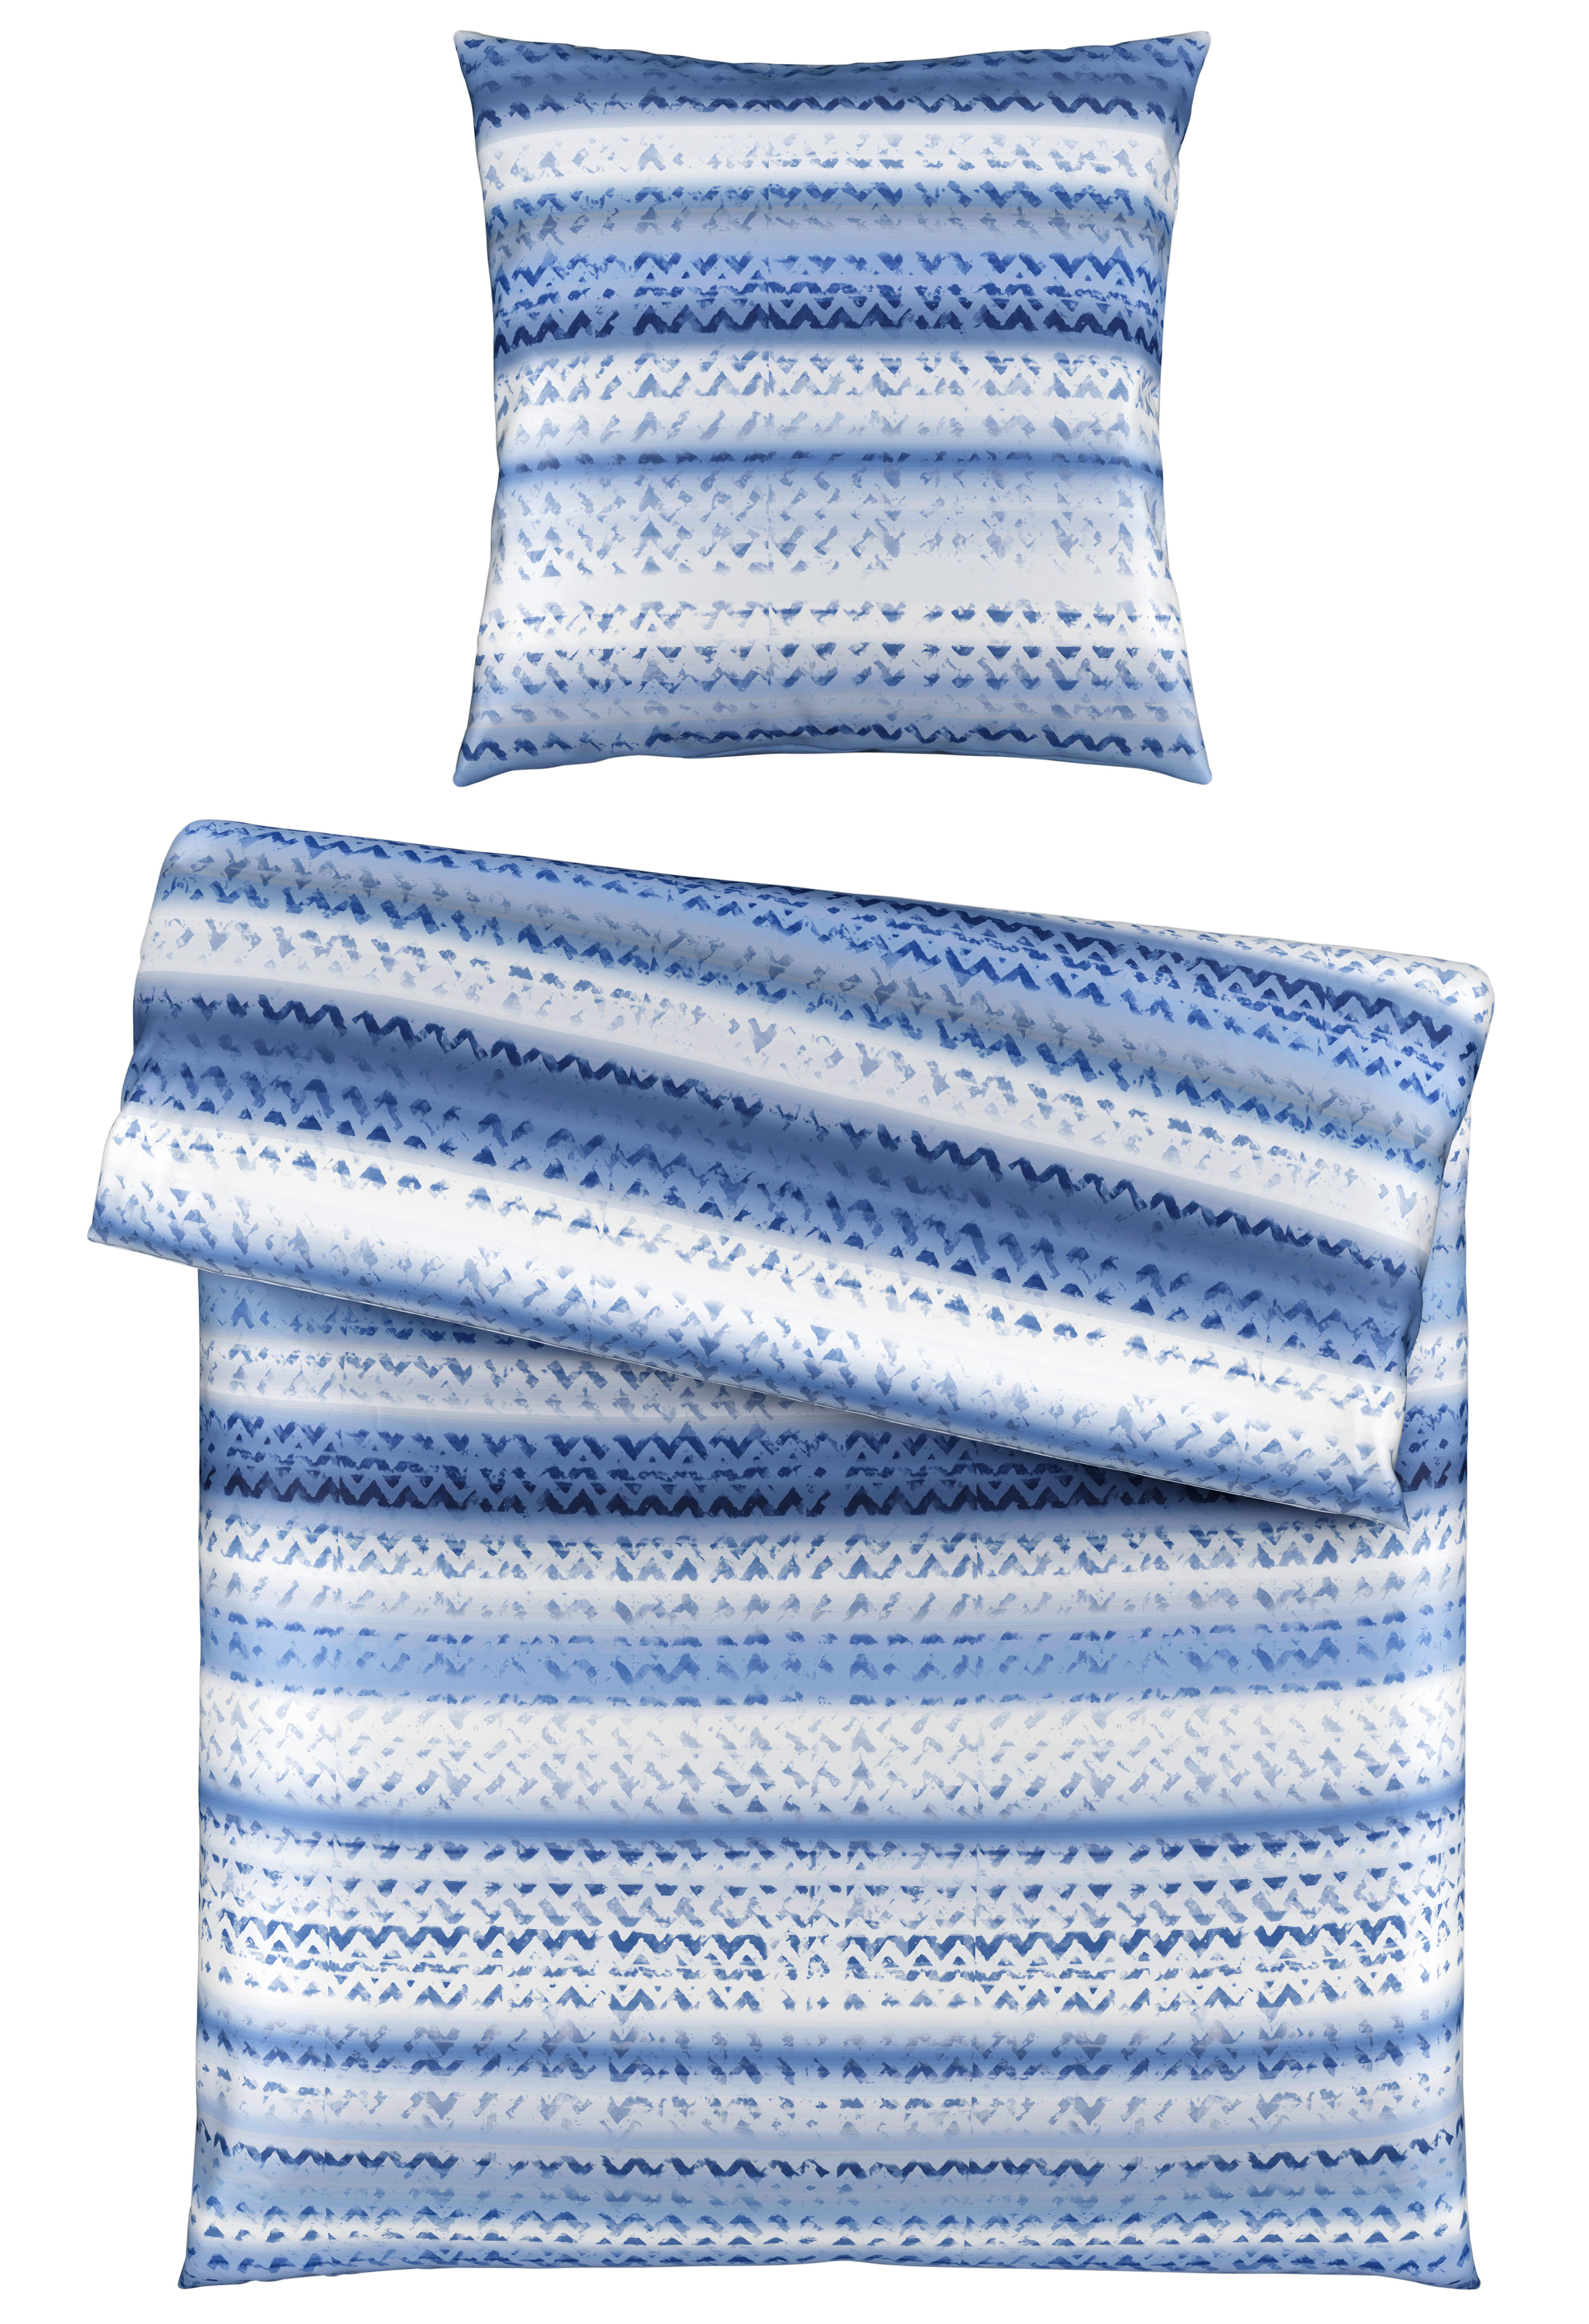 BETTWÄSCHE Satin  - Blau, KONVENTIONELL, Textil (135/200cm) - Bio:Vio